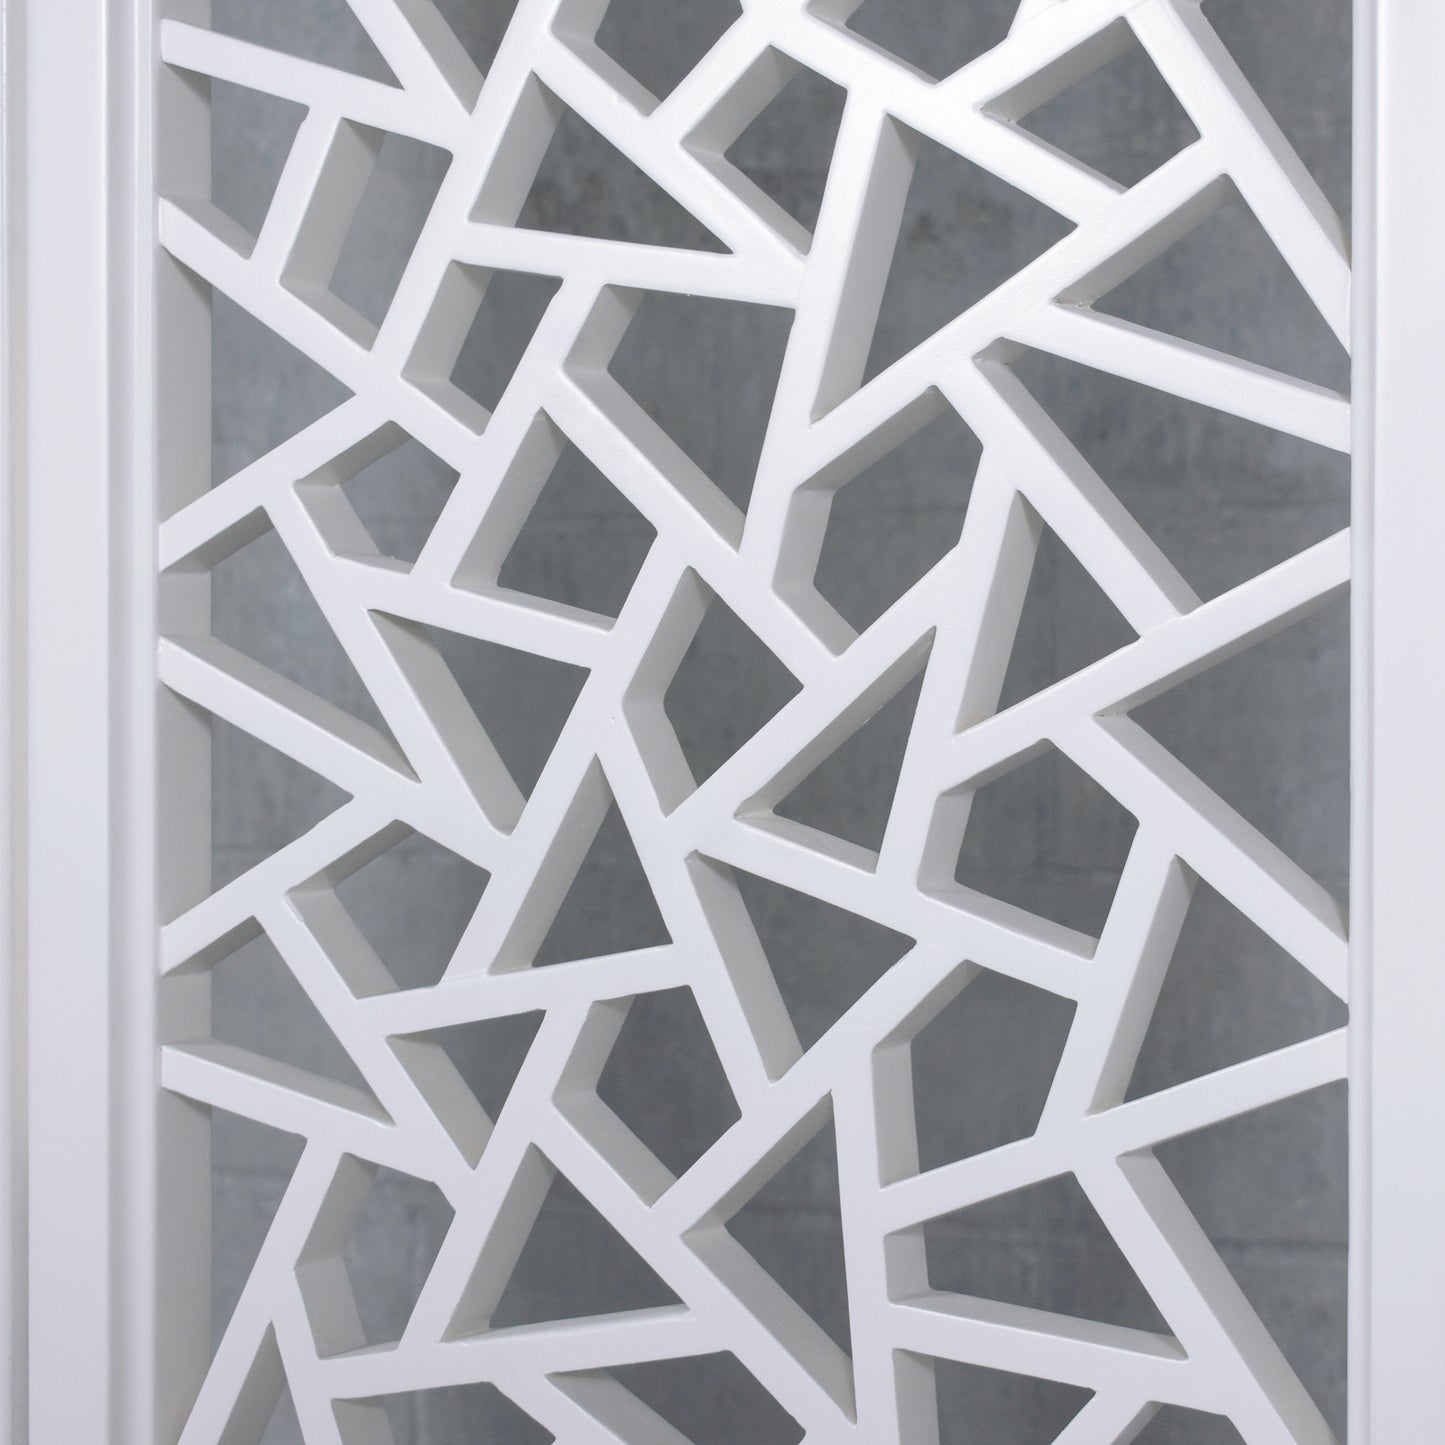 Vintage Solid Wood Room Divider with Carved Design - Elegant Off-White Six-Panel